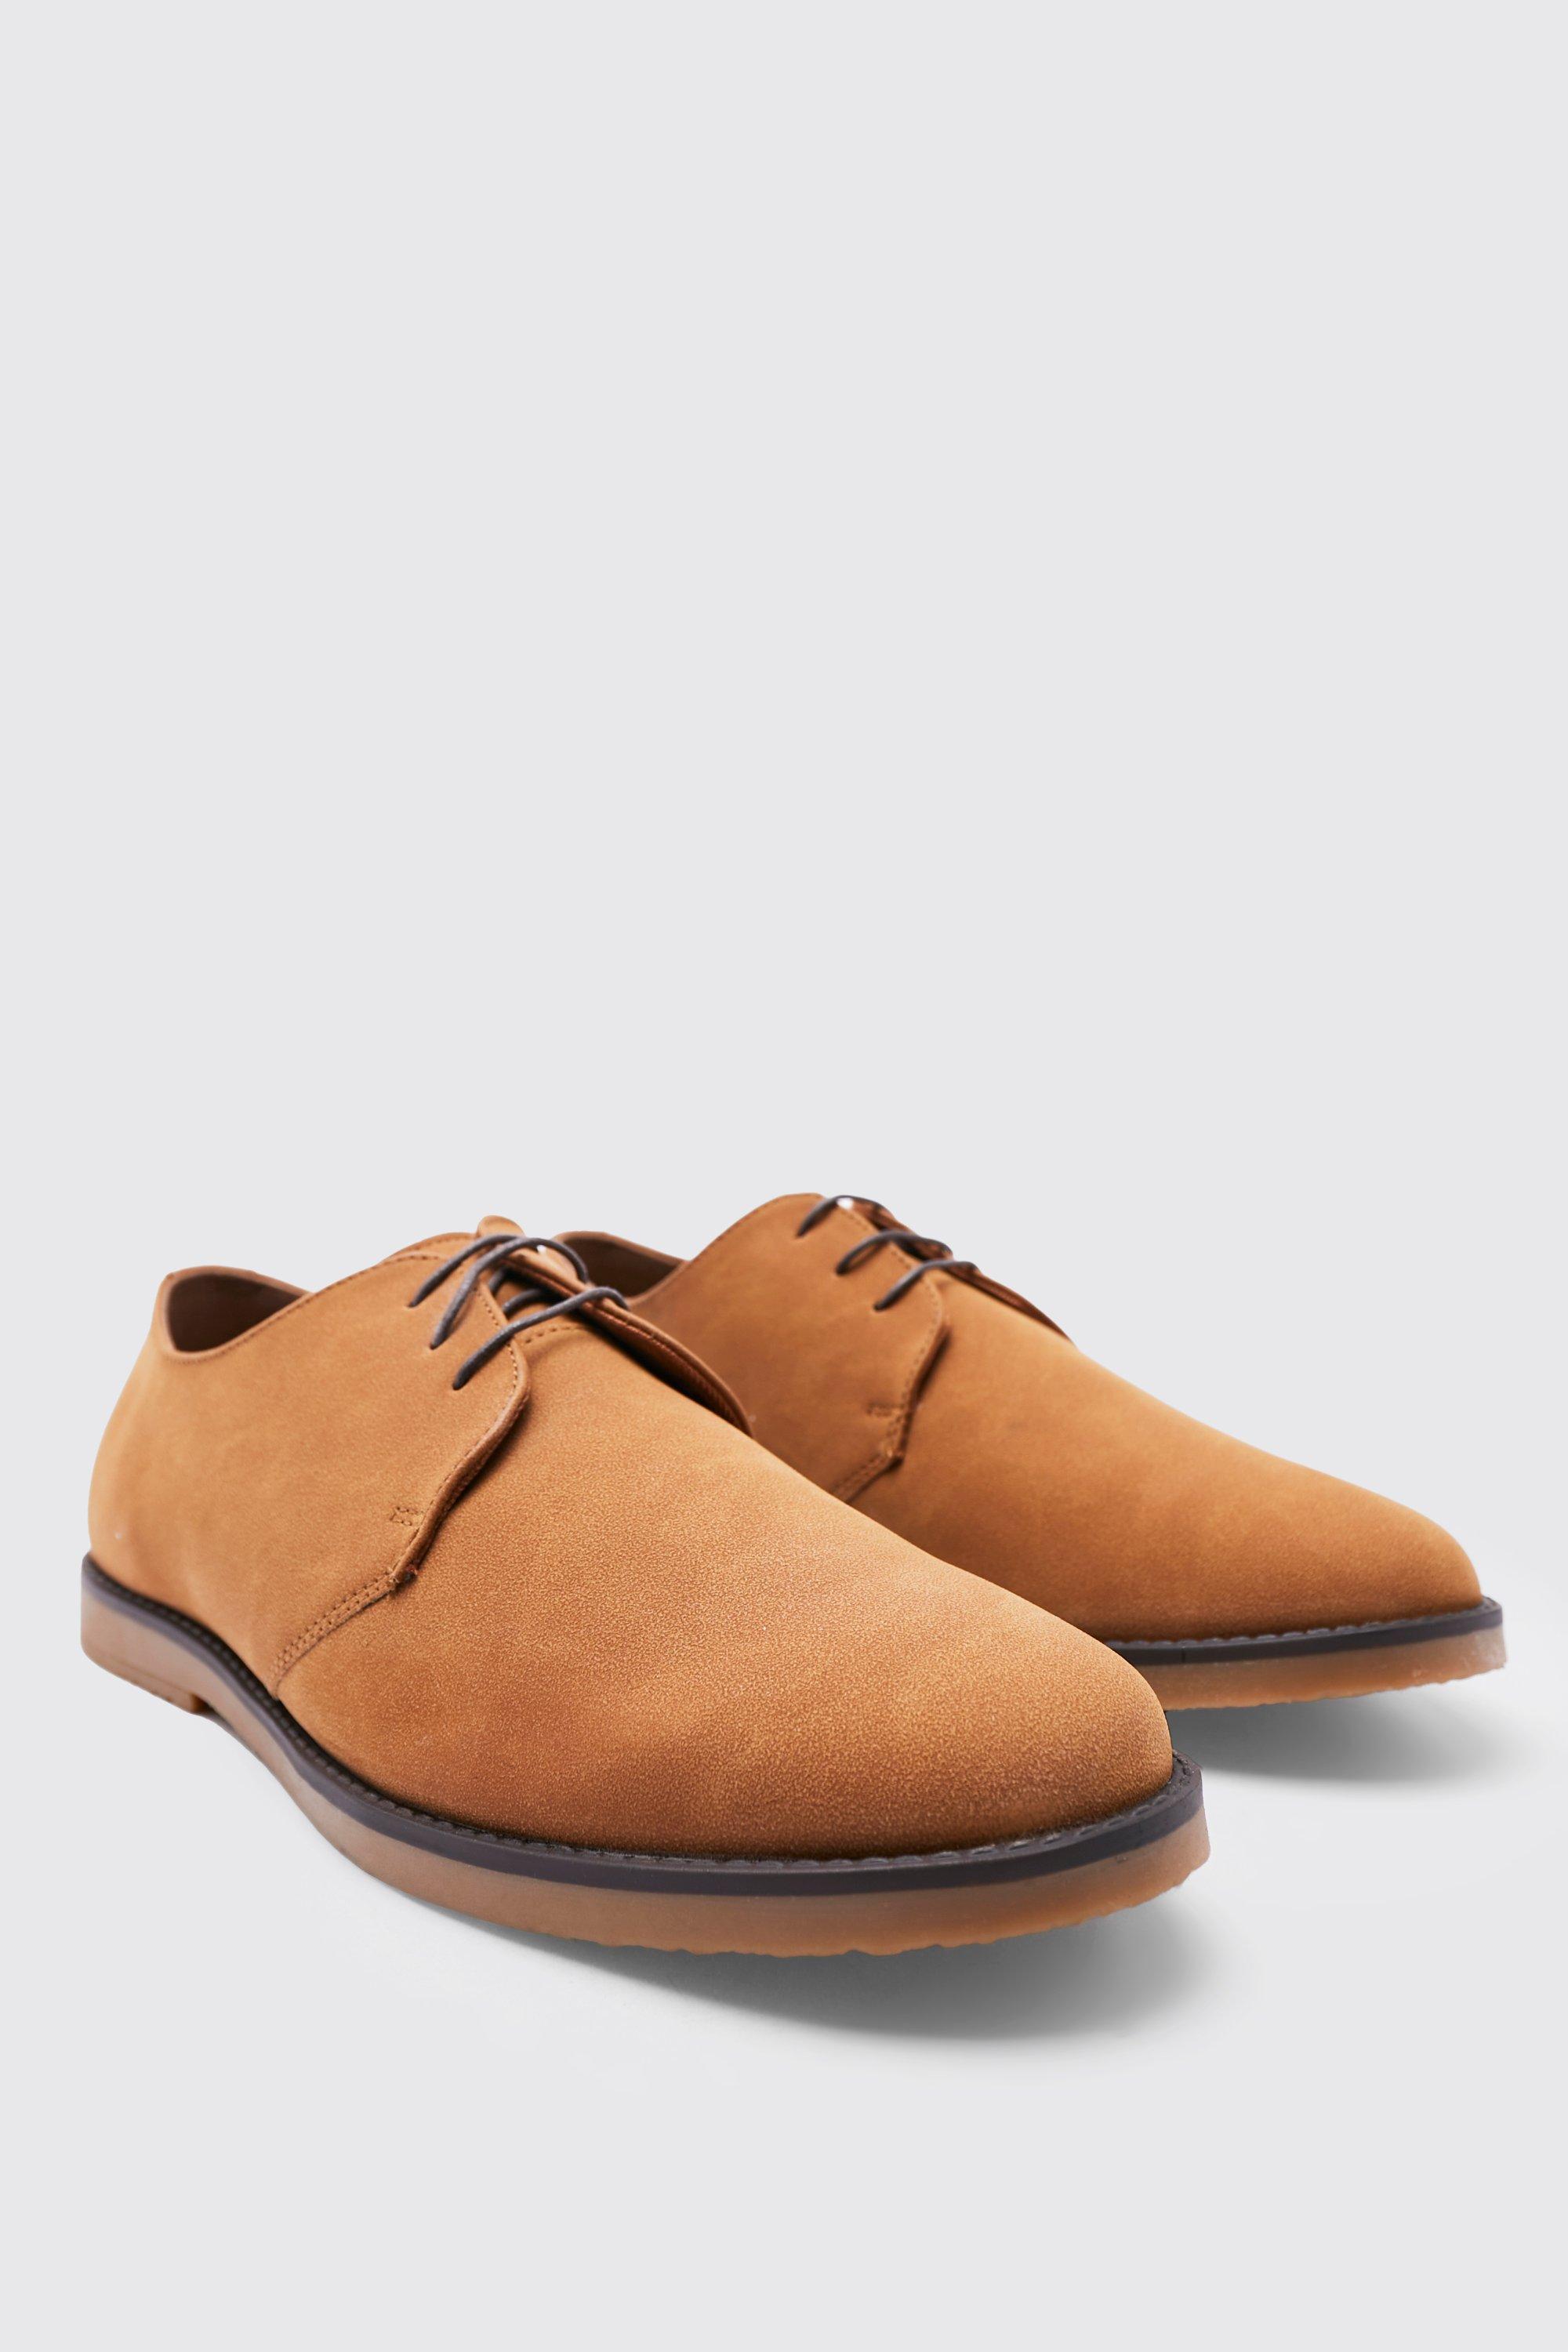 chaussures derby en faux daim homme - brun doré - 44, brun doré